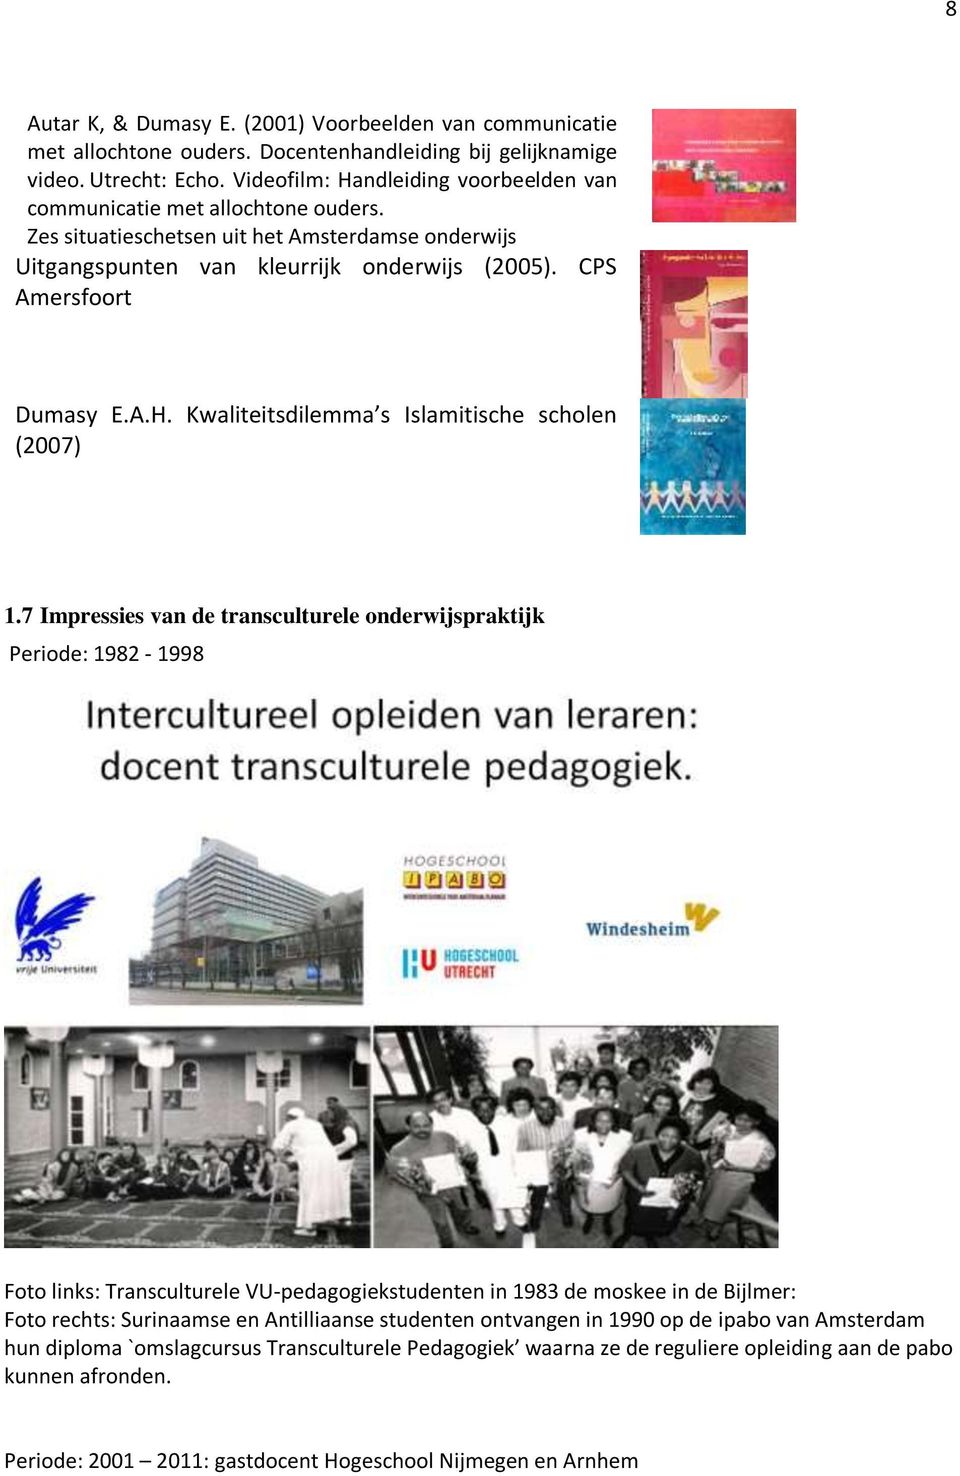 7 Impressies van de transculturele onderwijspraktijk Periode: 1982-1998 Foto links: Transculturele VU-pedagogiekstudenten in 1983 de moskee in de Bijlmer: Foto rechts: Surinaamse en Antilliaanse